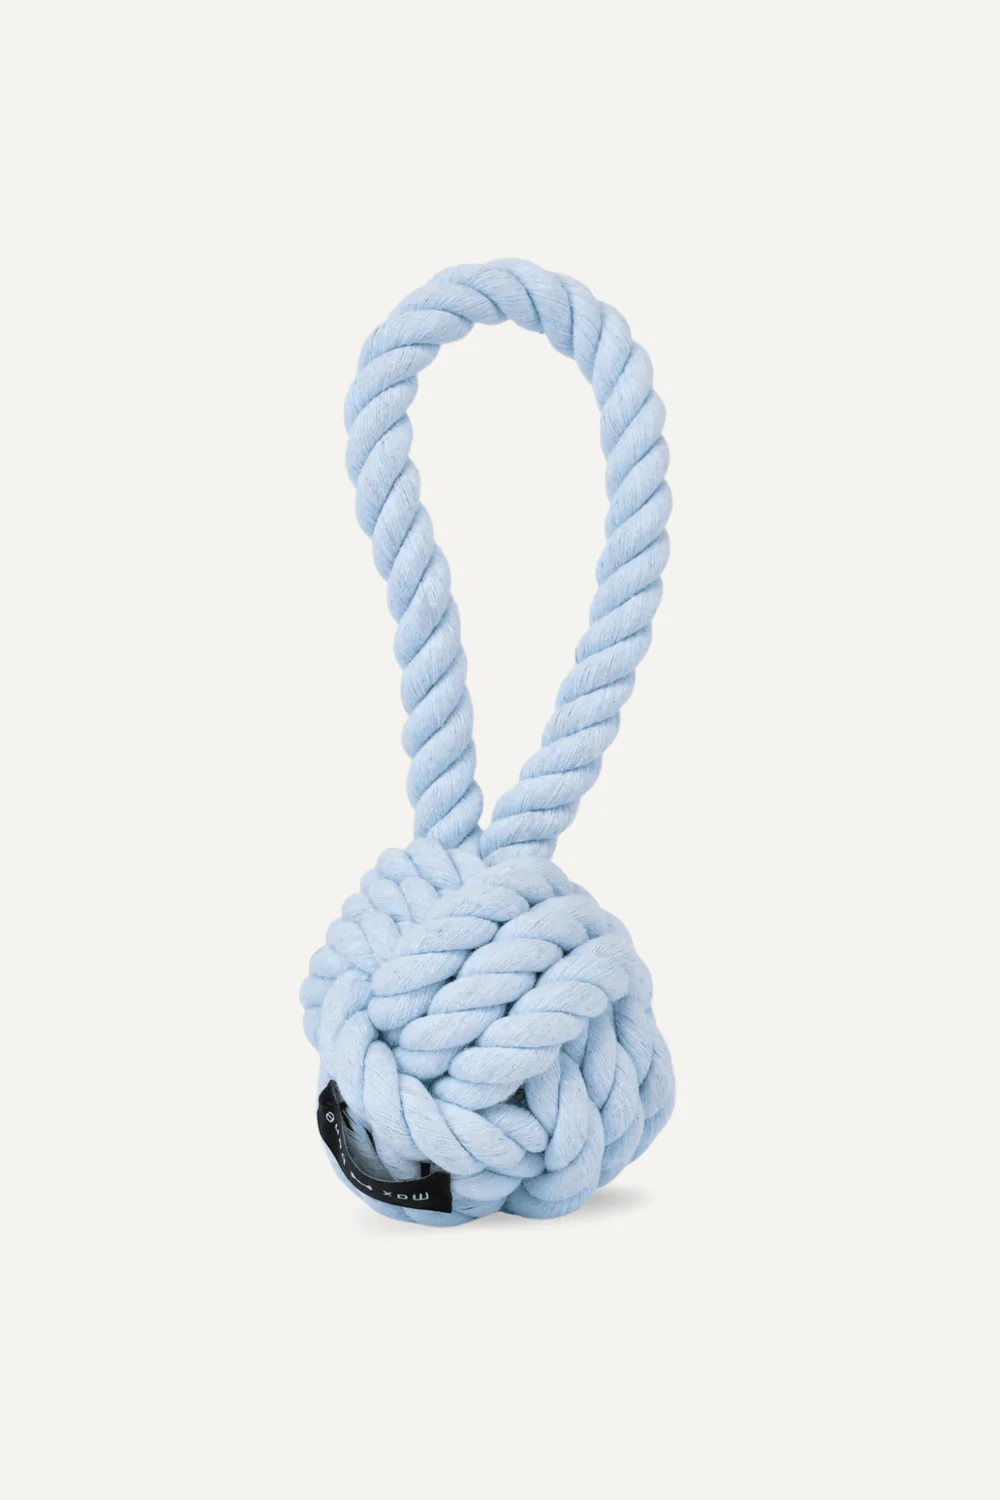 Maxbone Large Blue Twisted Rope Dog Toy